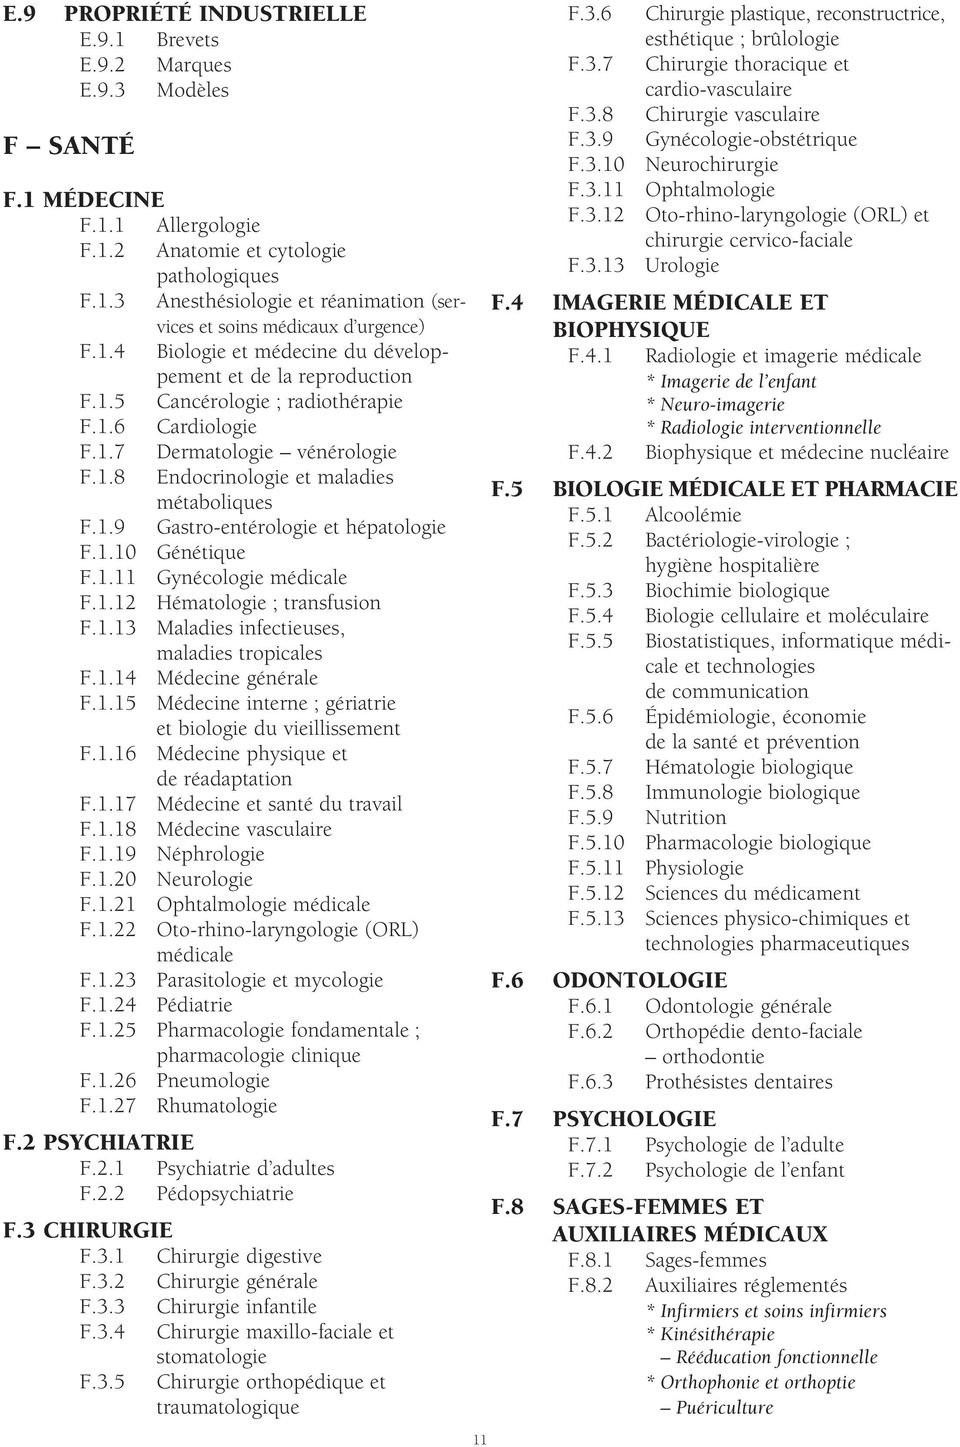 1.10 Génétique F.1.11 Gynécologie médicale F.1.12 Hématologie ; transfusion F.1.13 Maladies infectieuses, maladies tropicales F.1.14 Médecine générale F.1.15 Médecine interne ; gériatrie et biologie du vieillissement F.